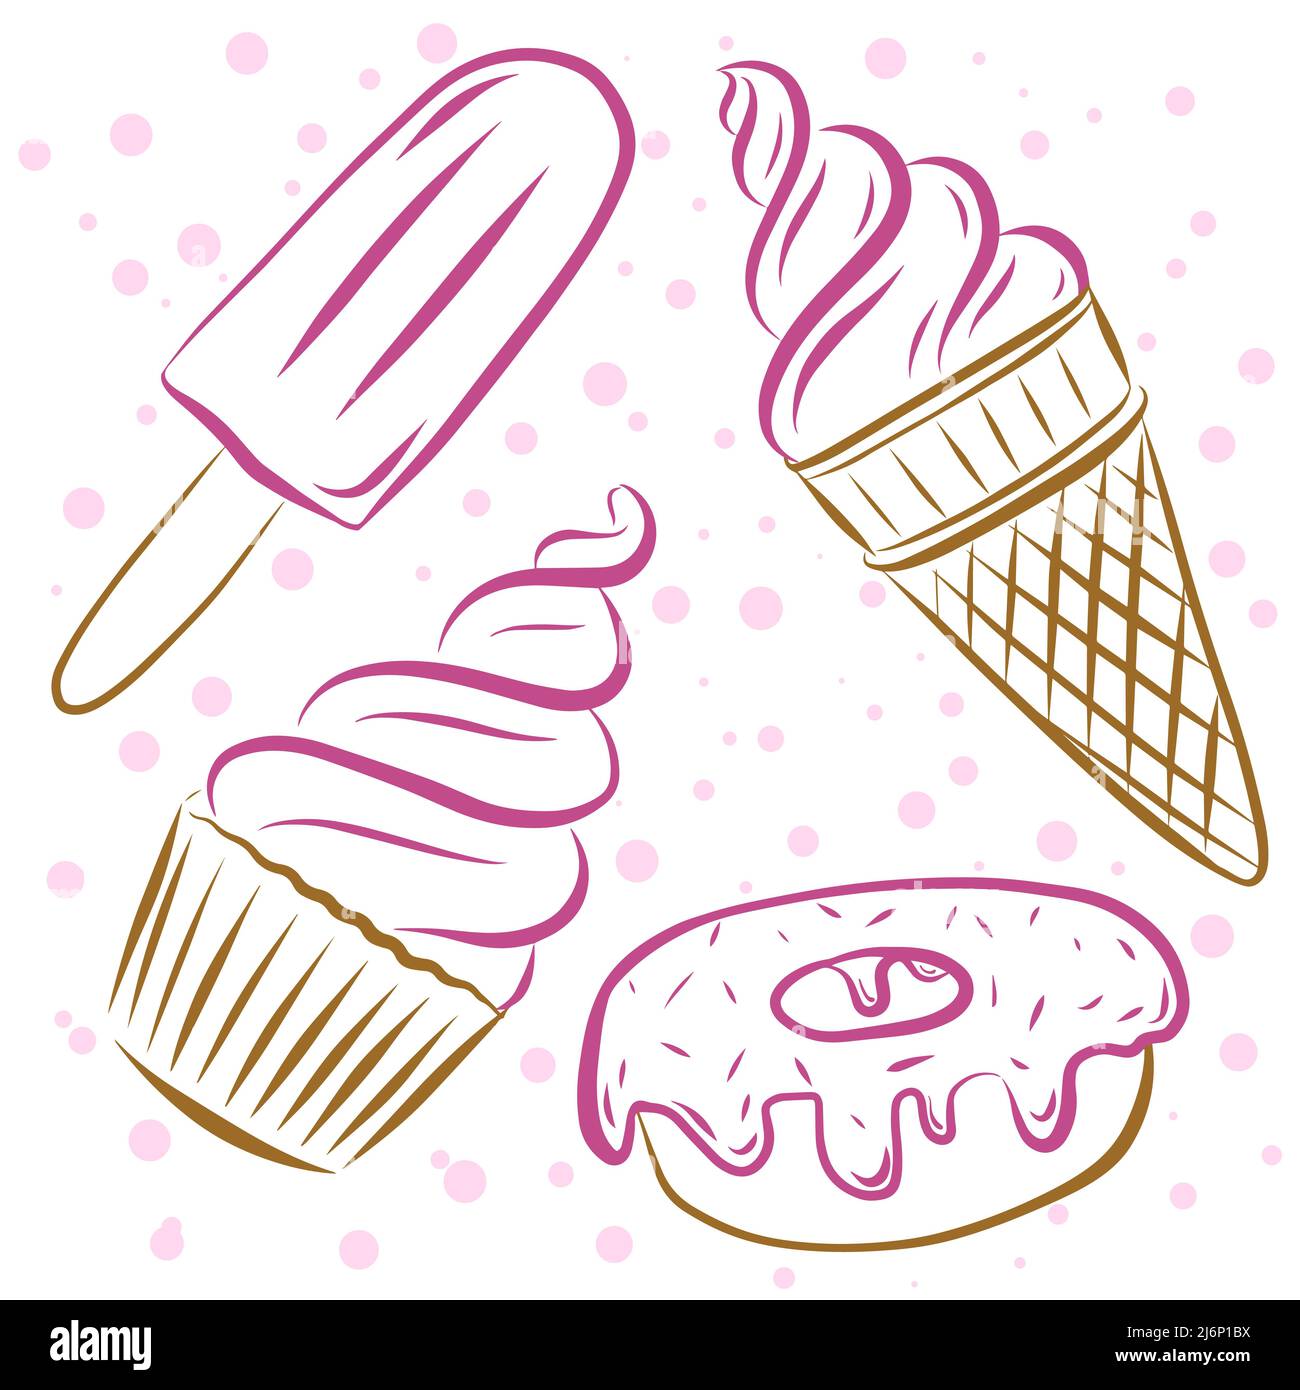 Illustrazione vettoriale a colori. Set di cupcake, gelato in un corno, popsicle e ciambelle. Gli elementi sono disegnati a mano e isolati su uno sfondo bianco.obje Illustrazione Vettoriale